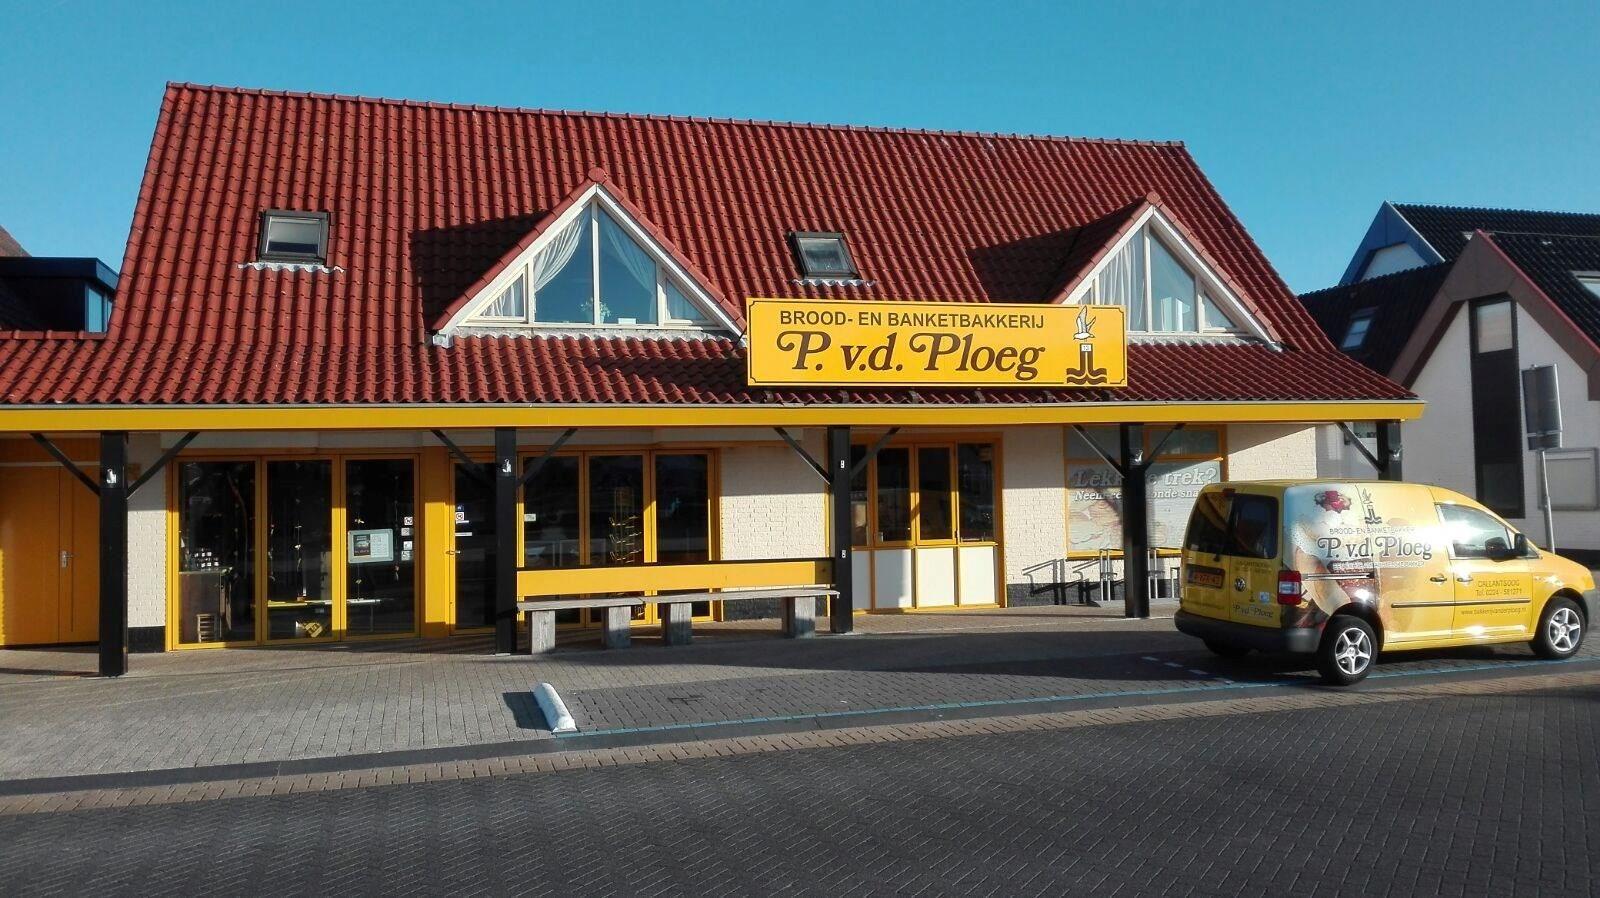 Bakery Peter v.d. Ploeg